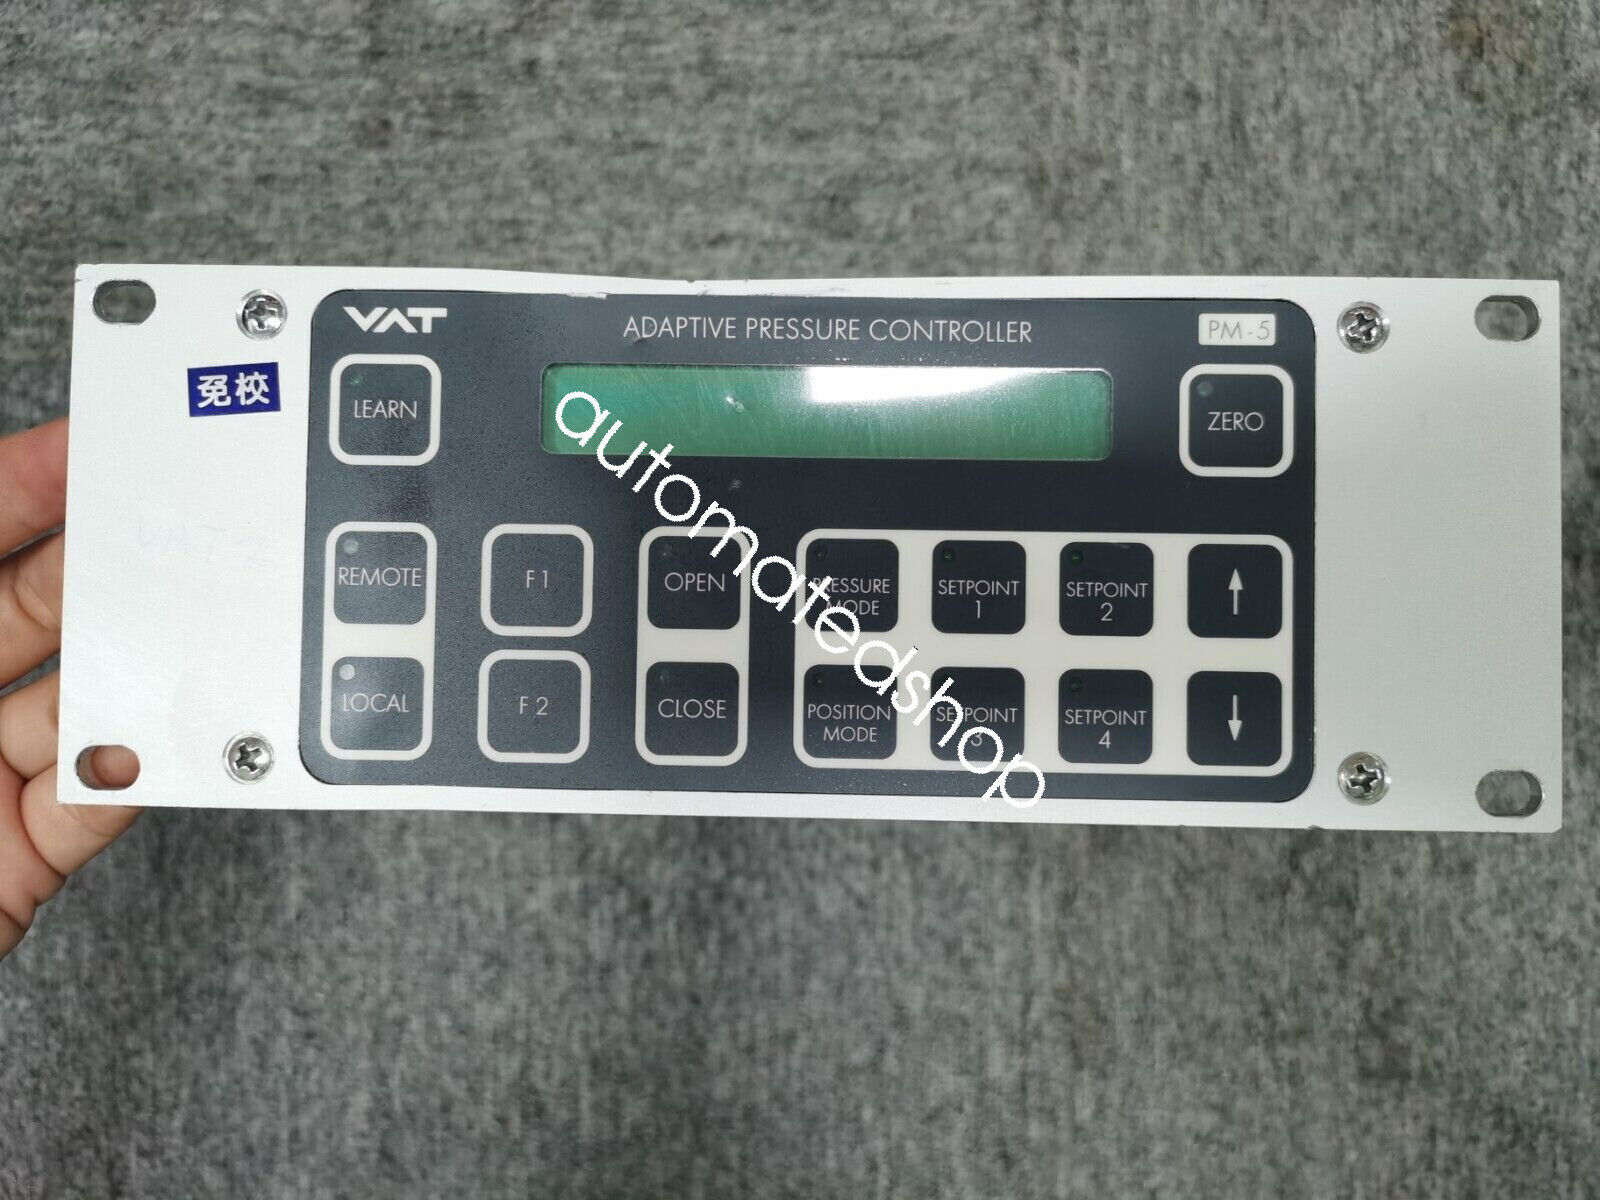 VAT PM-5 Adaptive Pressure Controller FABR NO:641PM-16PL-0002/0939 DHL or FedEX